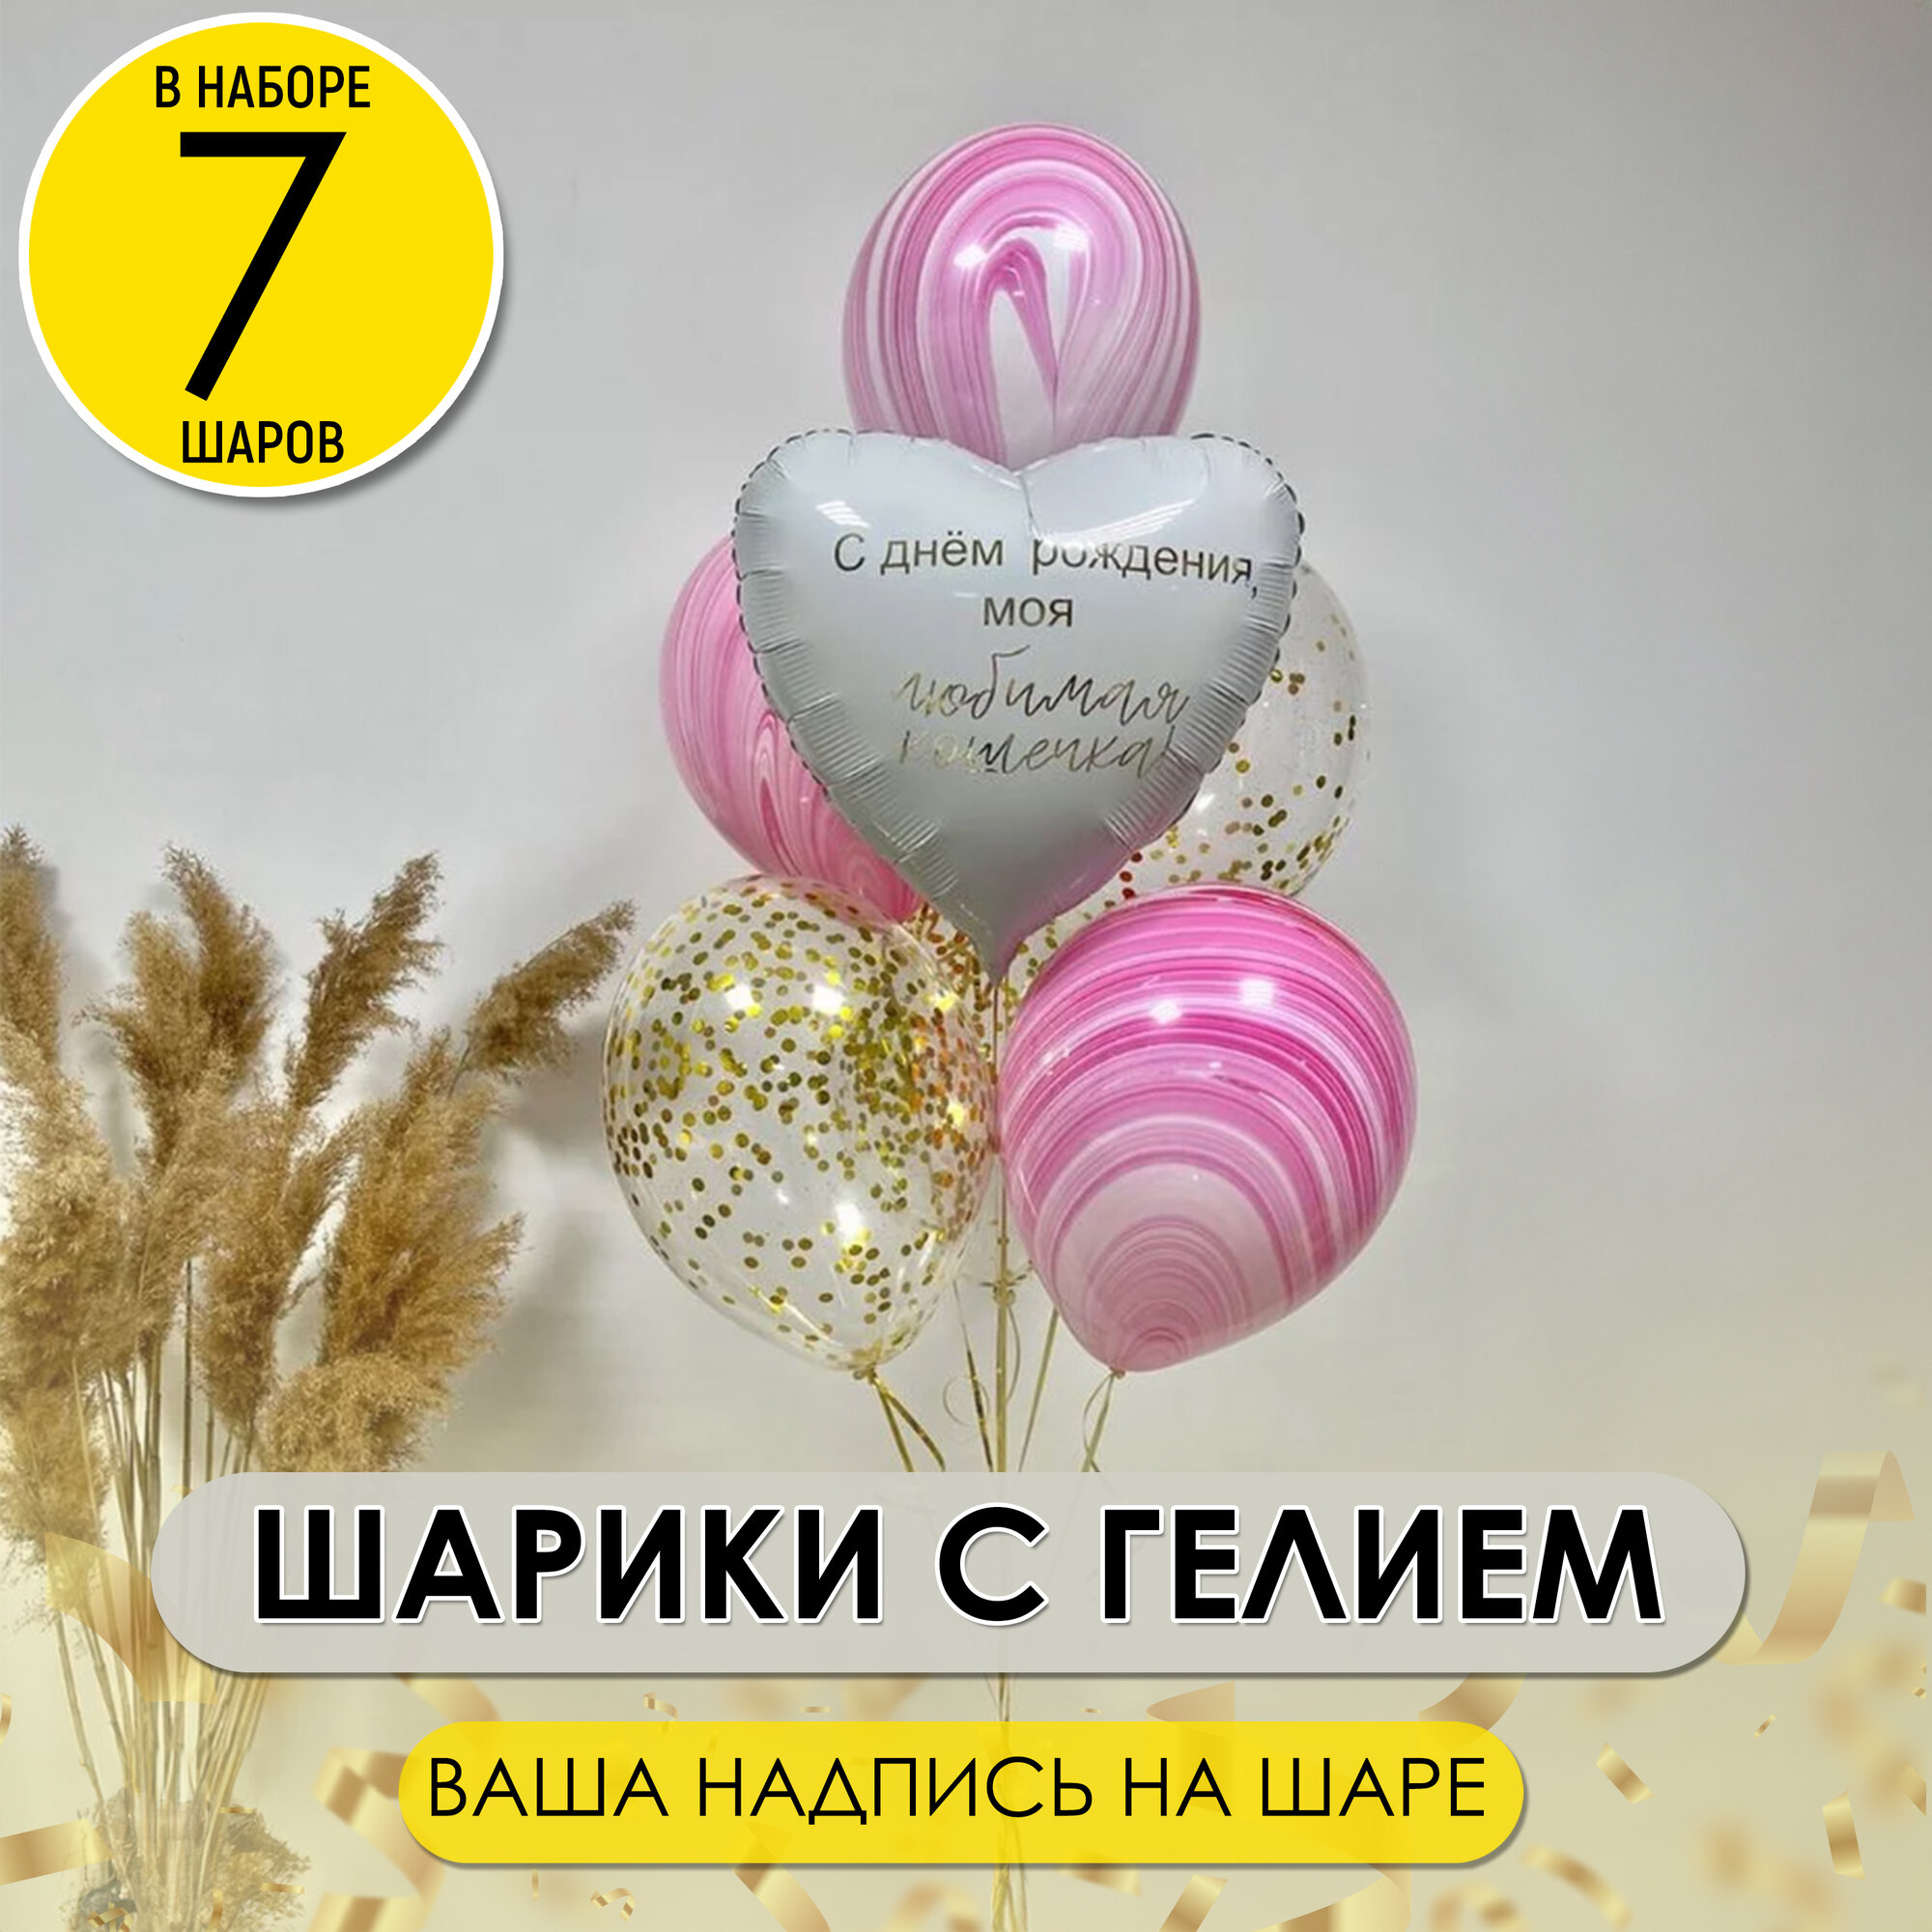 Фонтан воздушных шариков с гелием и фольгированное сердце с Вашей надписью, 7 шт